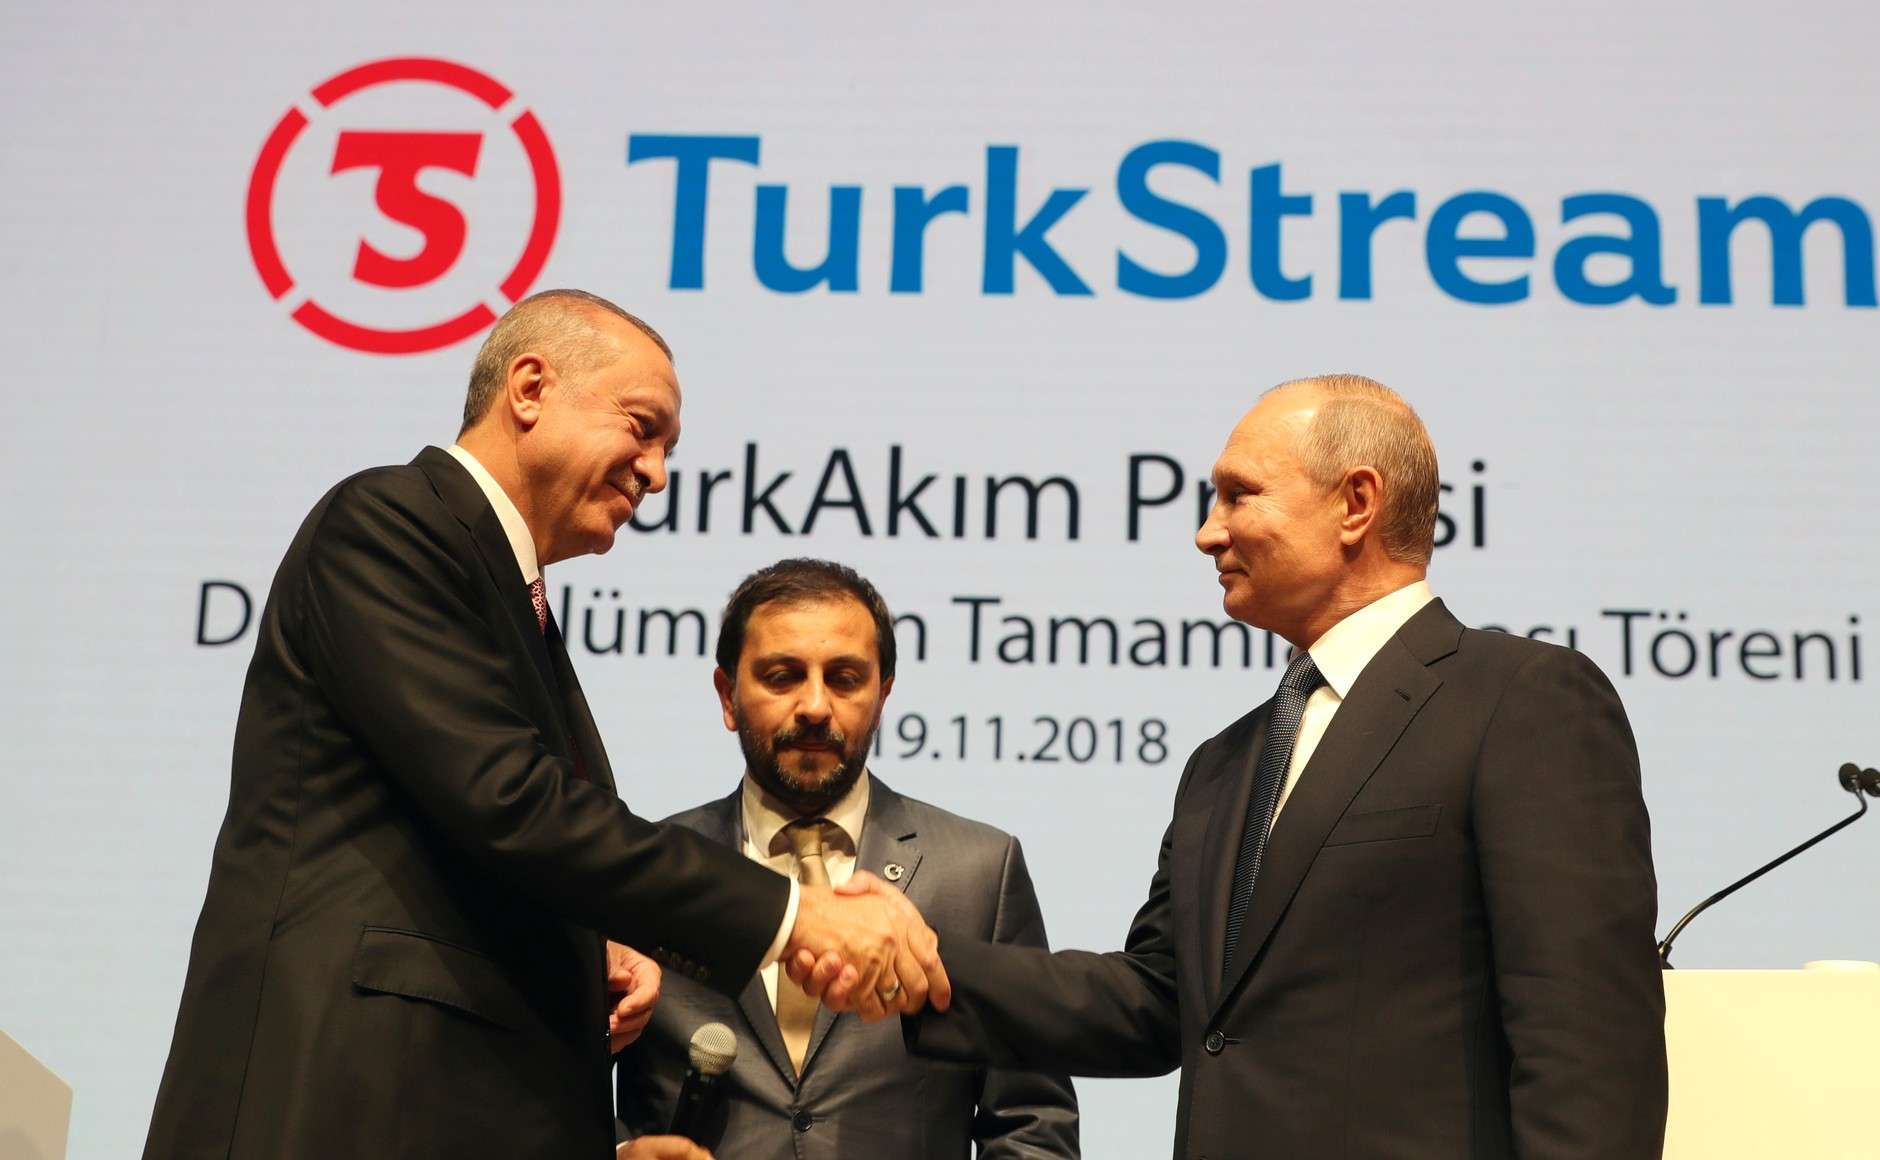 Τουρκία: Επένδυση περίπου 23 εκατ. δολαρίων για τον TurkStream το 2019